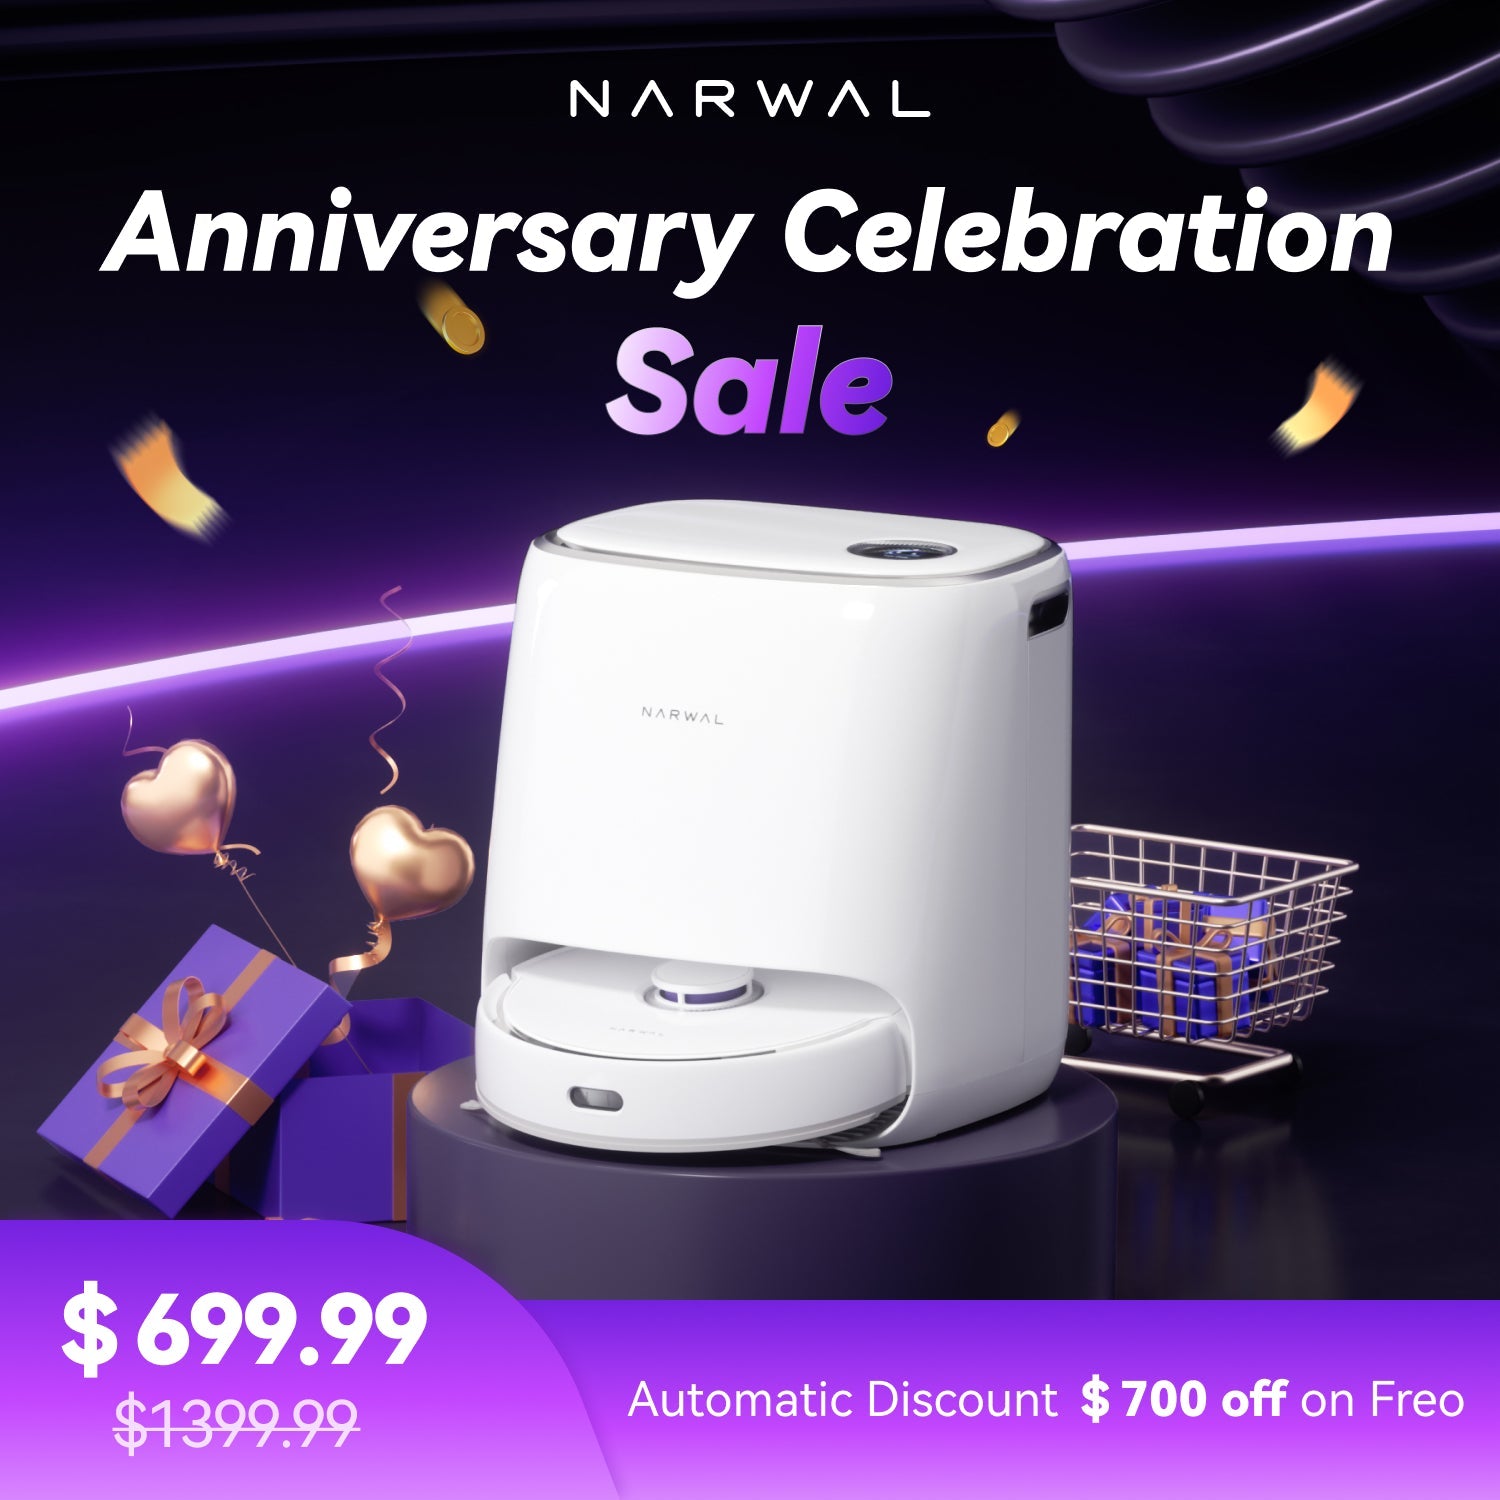 #narwalt10# - #narwal robot# - #cleaner machine# - #All - around cleaner#